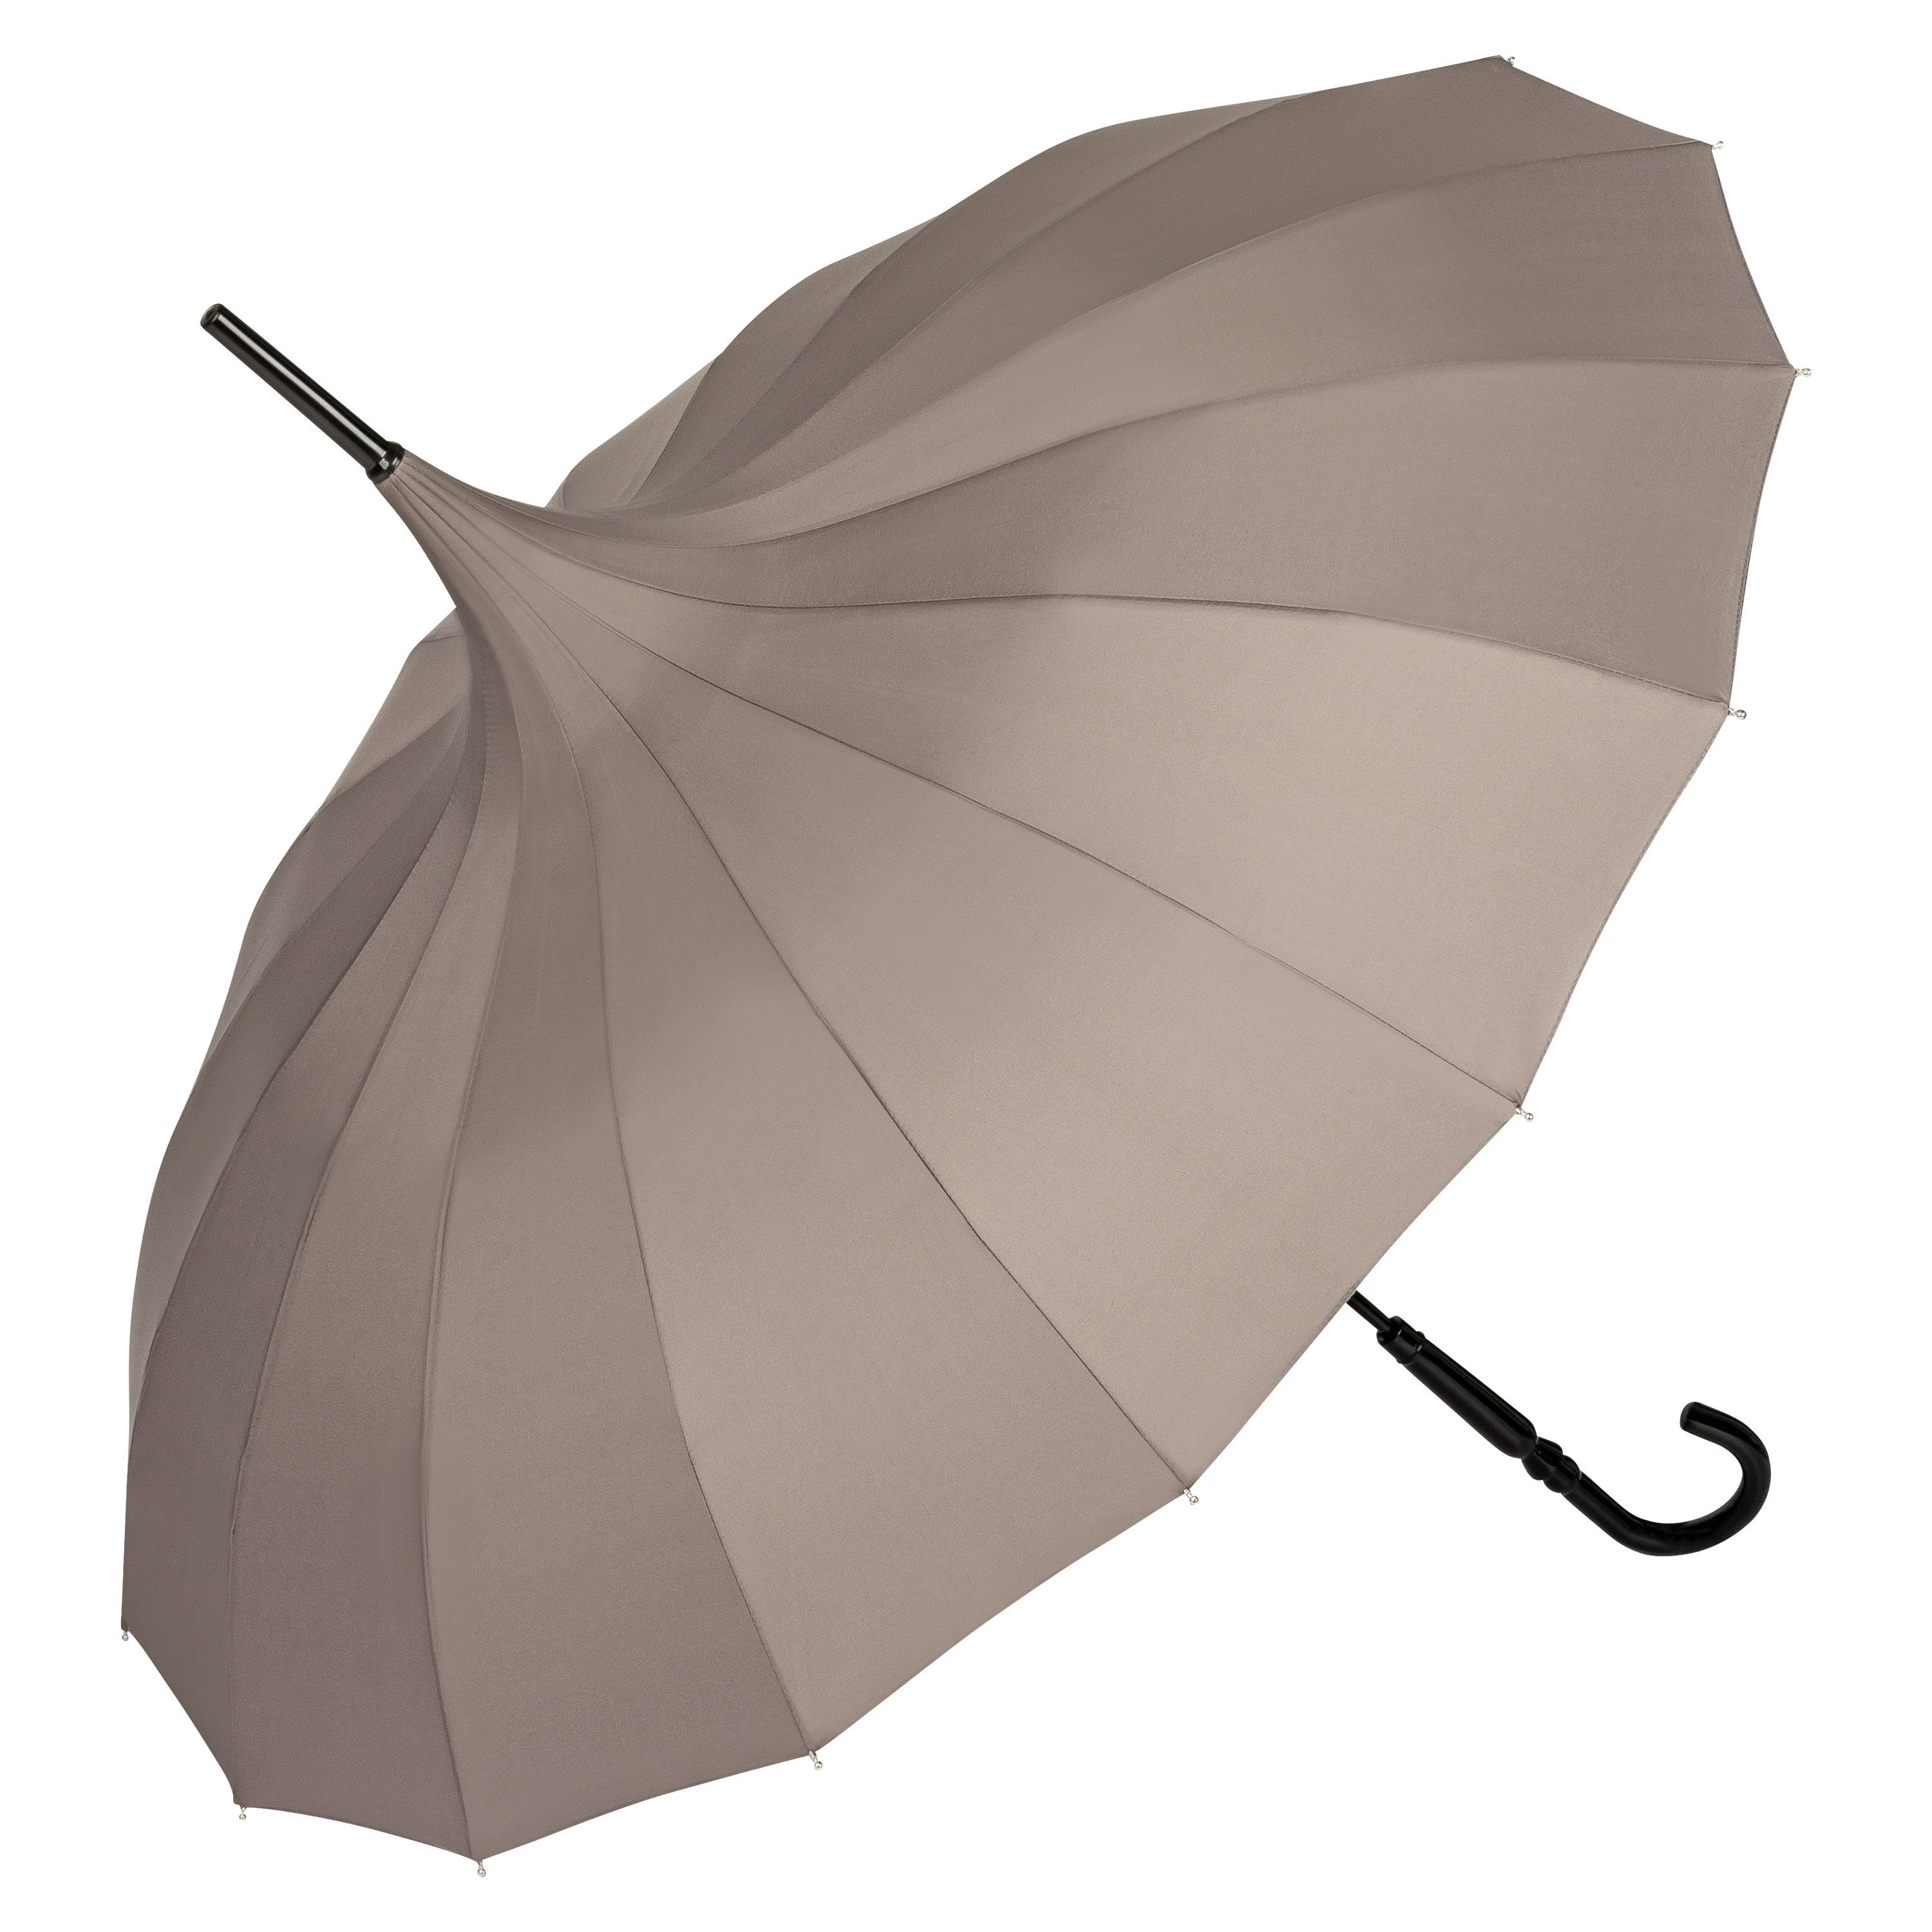 von Lilienfeld Stockregenschirm Regenschirm Sonnenschirm Pagode Charlotte, Pagodenform mit 16 Segmenten